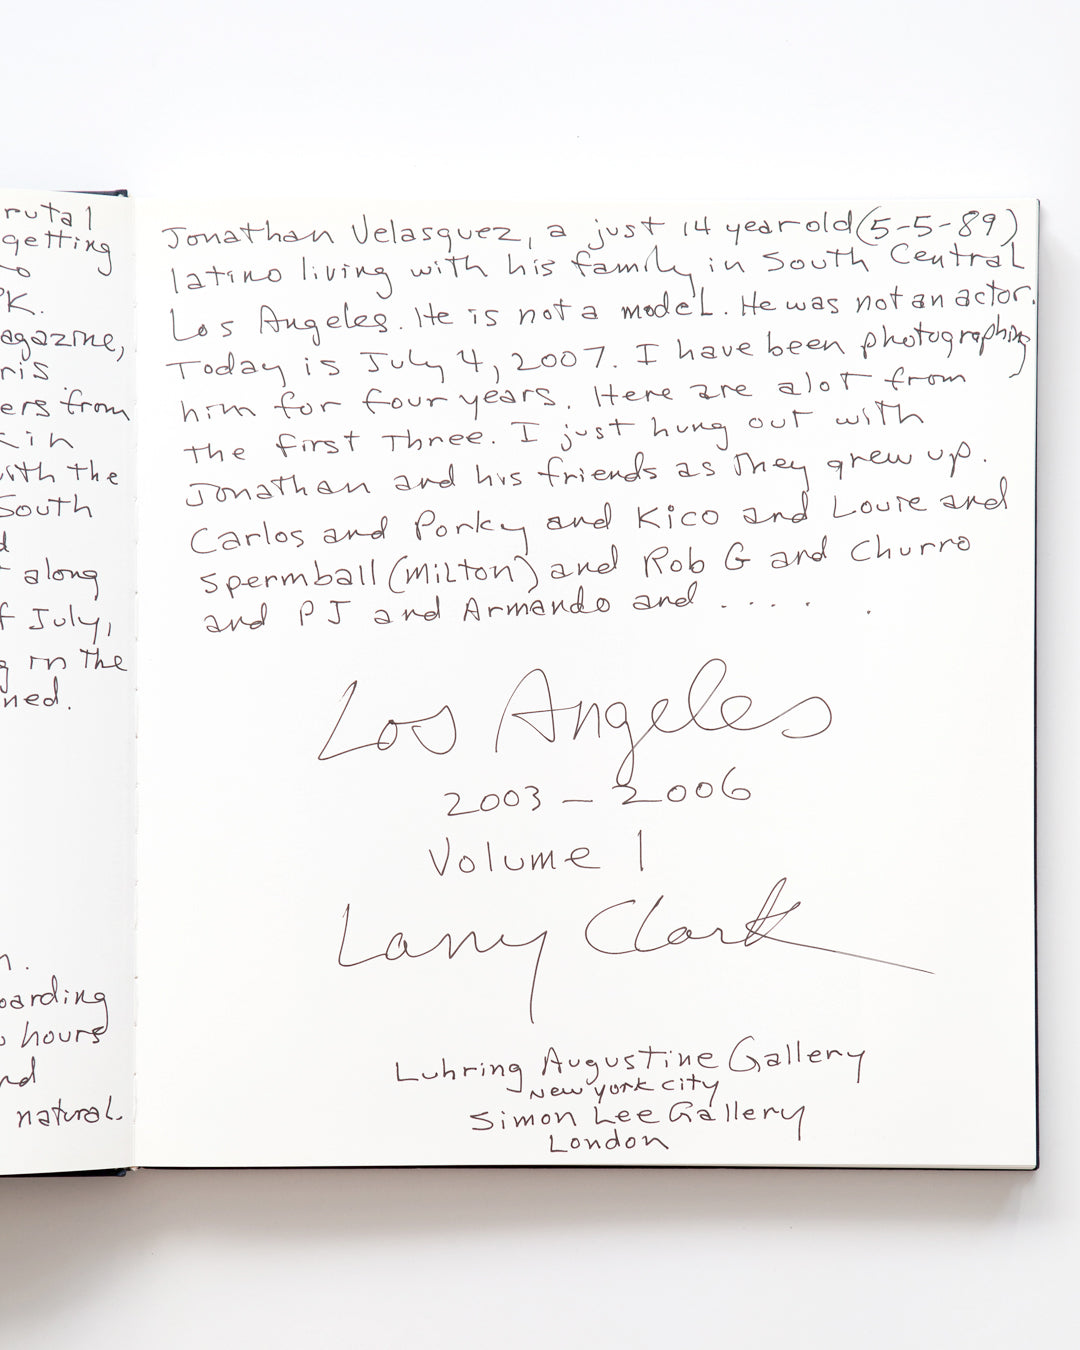 Larry Clark - Los Angeles 2003-2006 Volume I